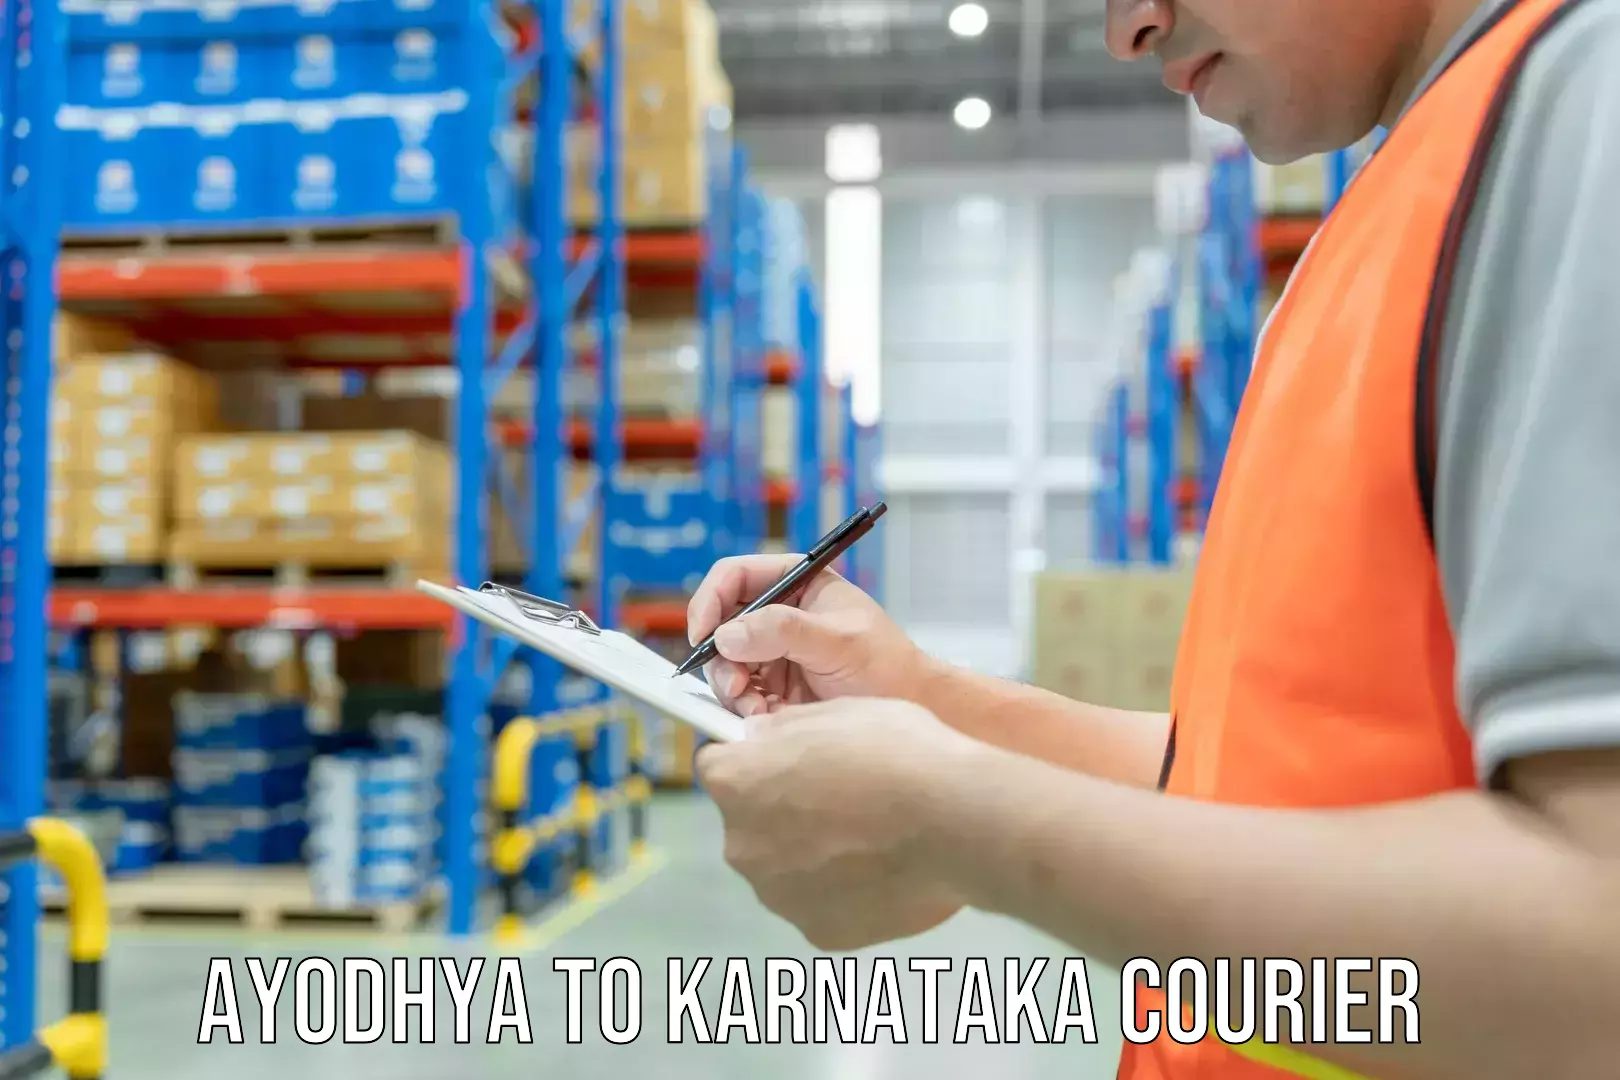 Automated shipping Ayodhya to Karnataka